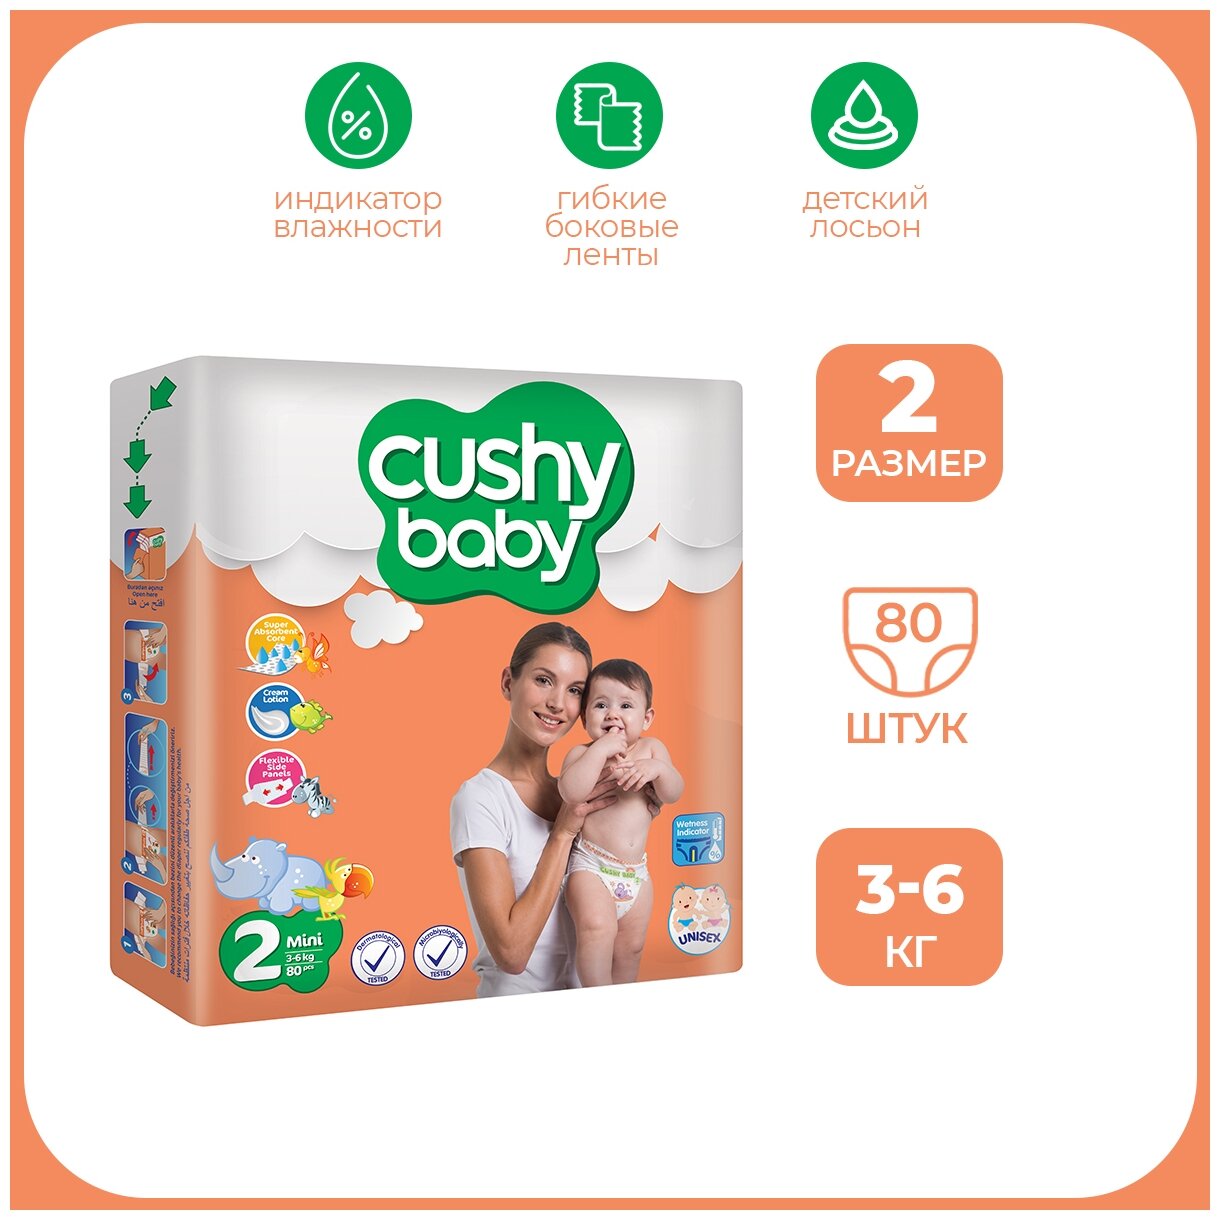 Подгузники 2 размер CUSHY BABY для новорожденных детей весом 3-6 кг, 80 шт.